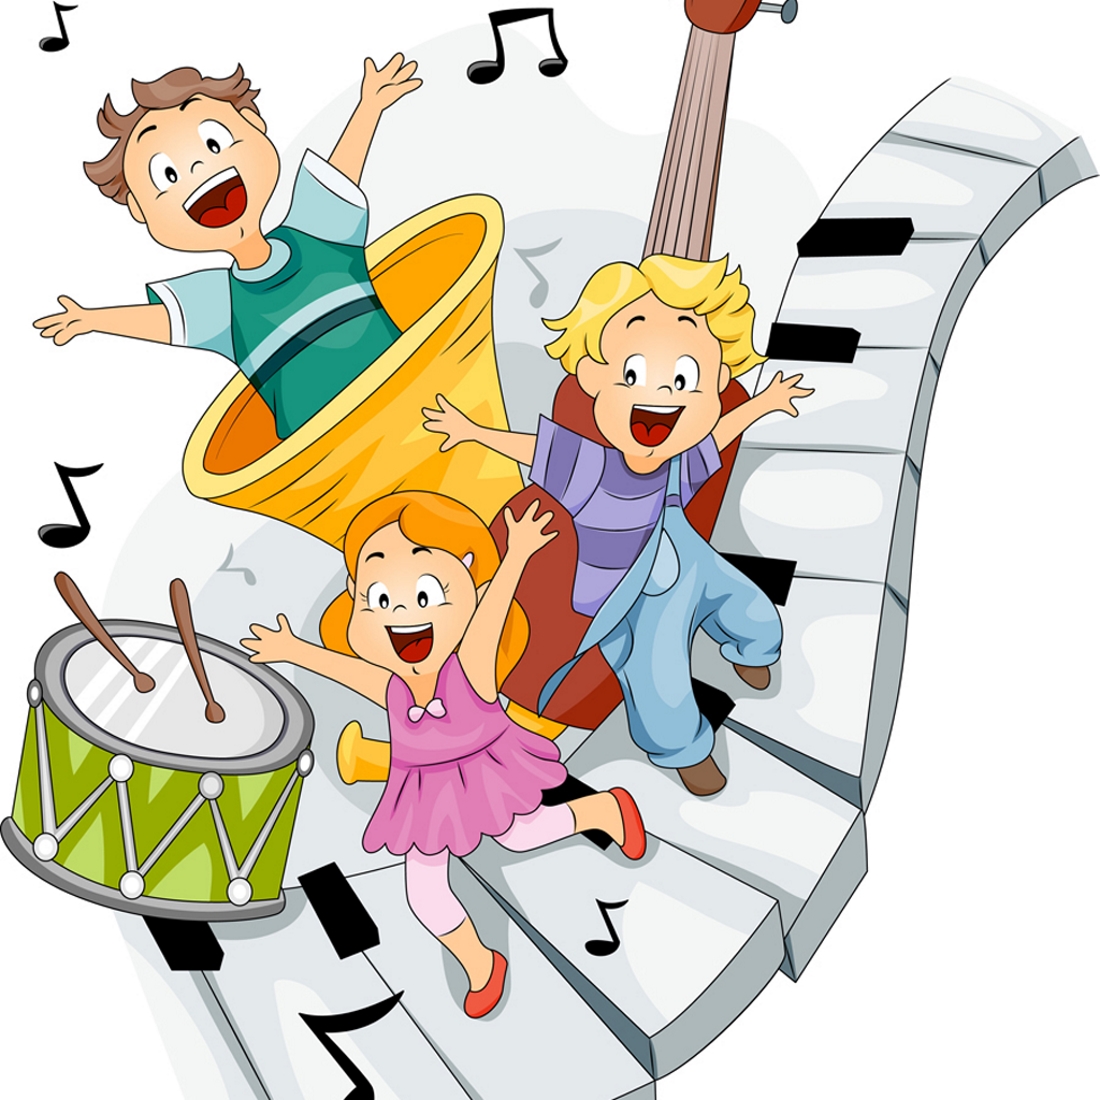 Здесь играем и поем. Музыкальные картинки для детей. Музыкальные инструменты для детей. Веселые музыканты. Картинки на музыкальную тему.